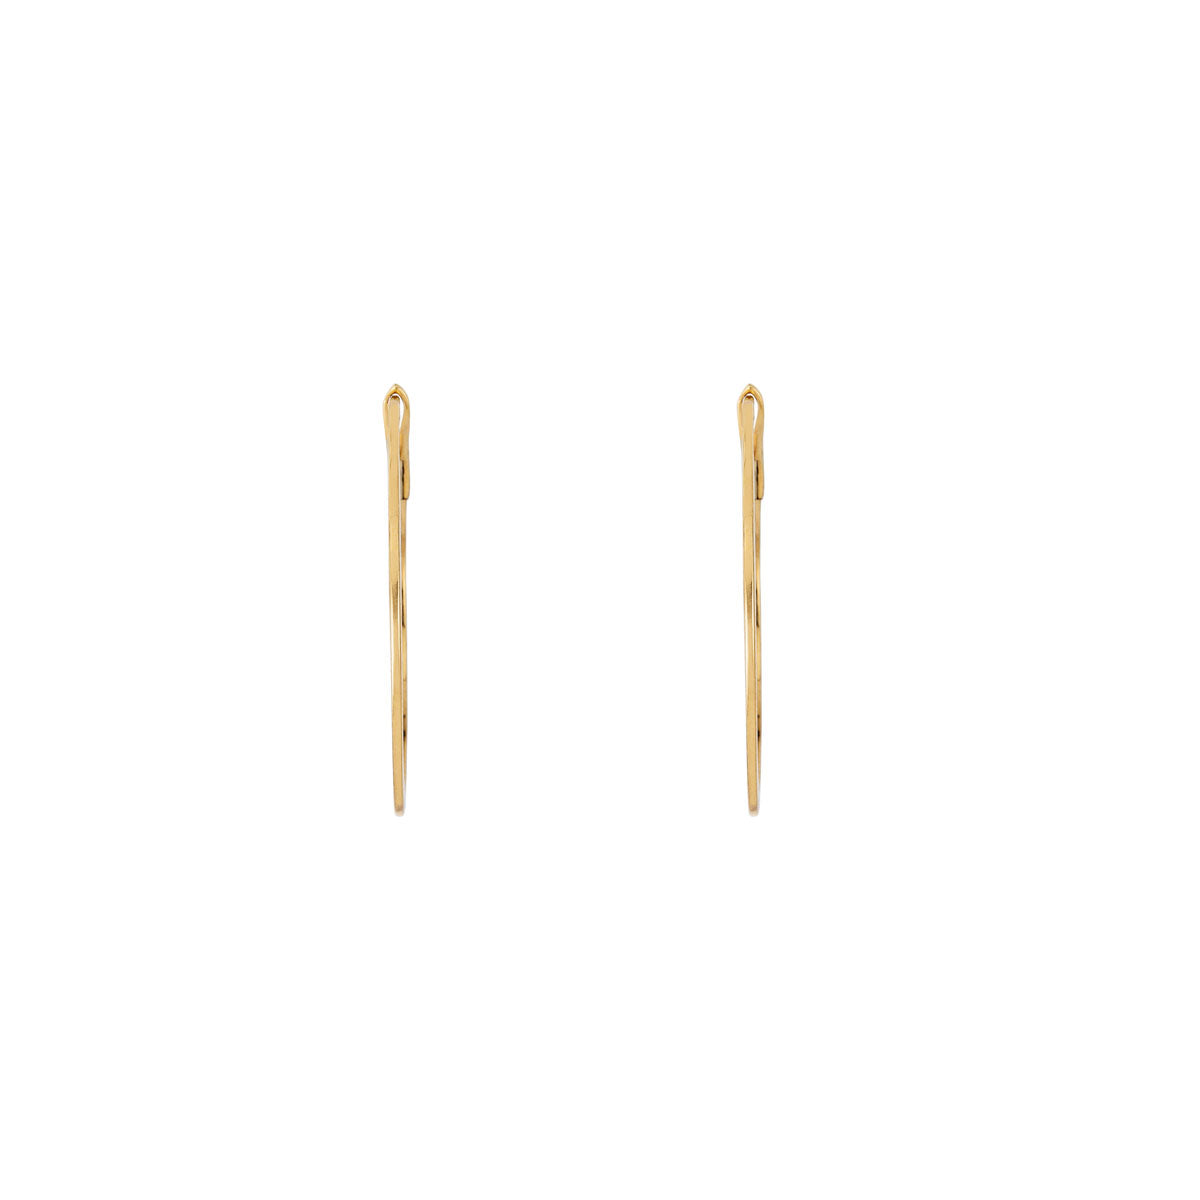 1 inch quarter gold skinny gold hoop earrings